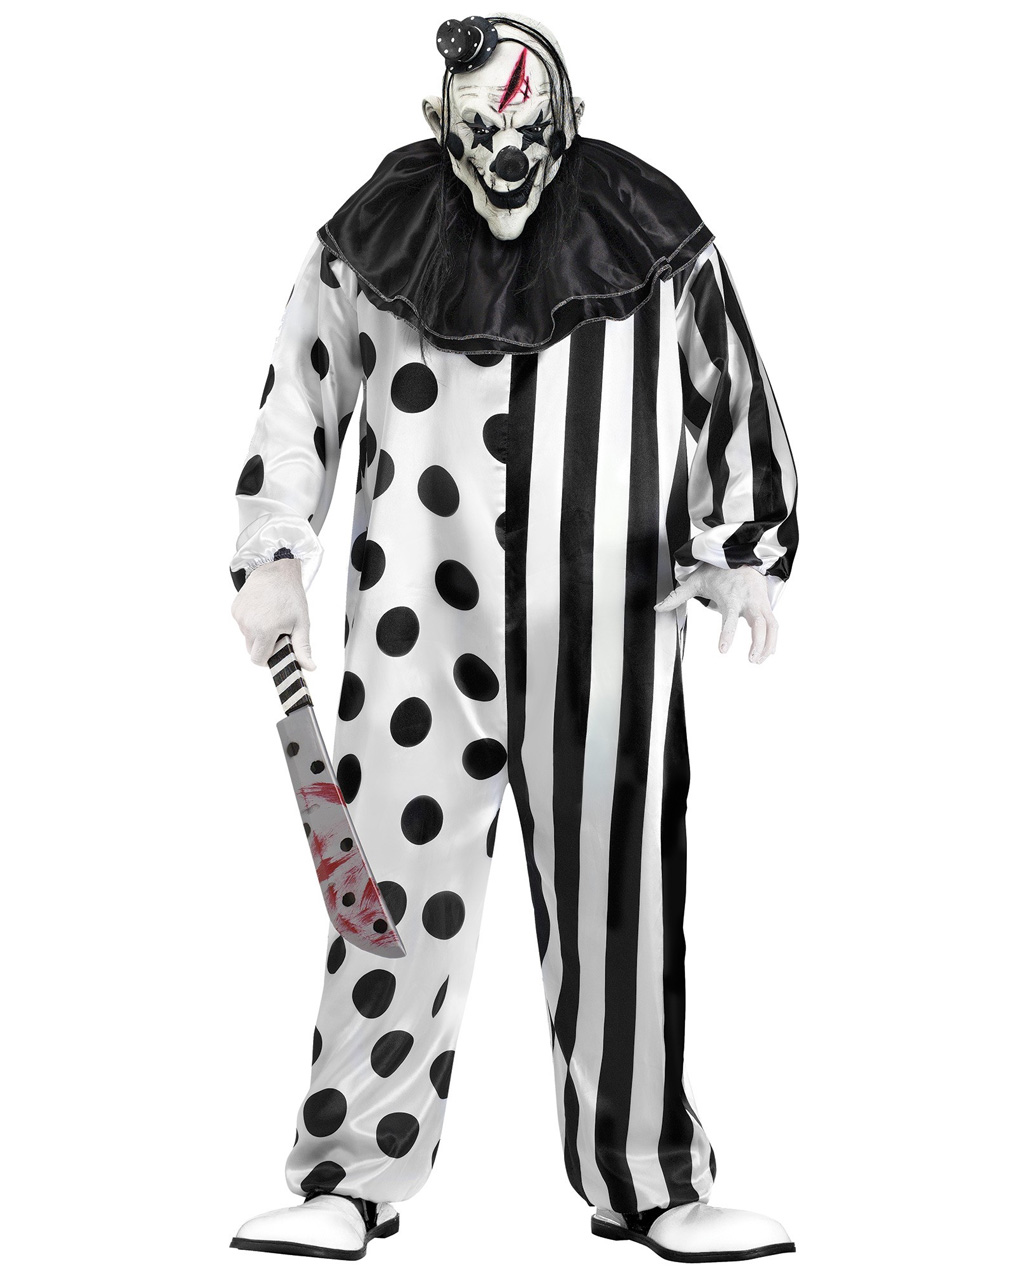 Killer Clown Kostüm - Horror Clown Kostüm mit Maske von Horror-Shop.com